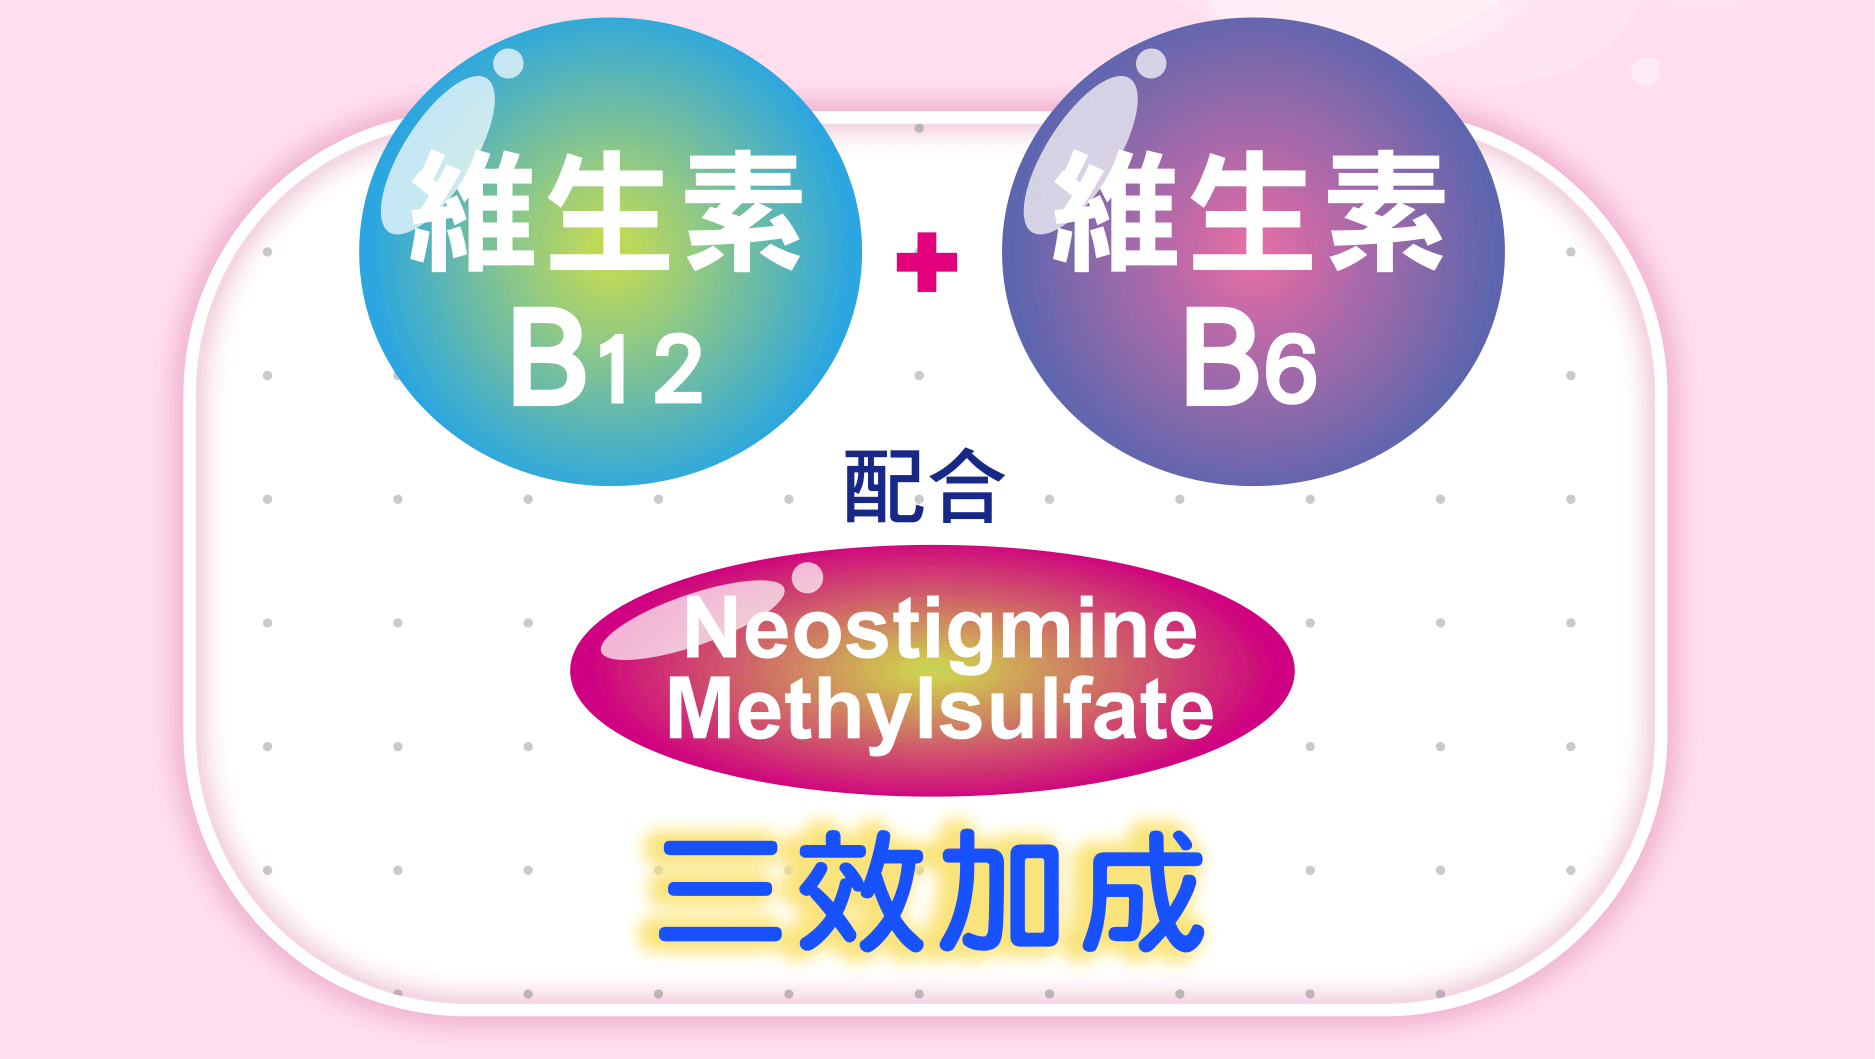 維生素 B12 維生素 B6 配合 Neostigmine Methylsulfate 三效加成